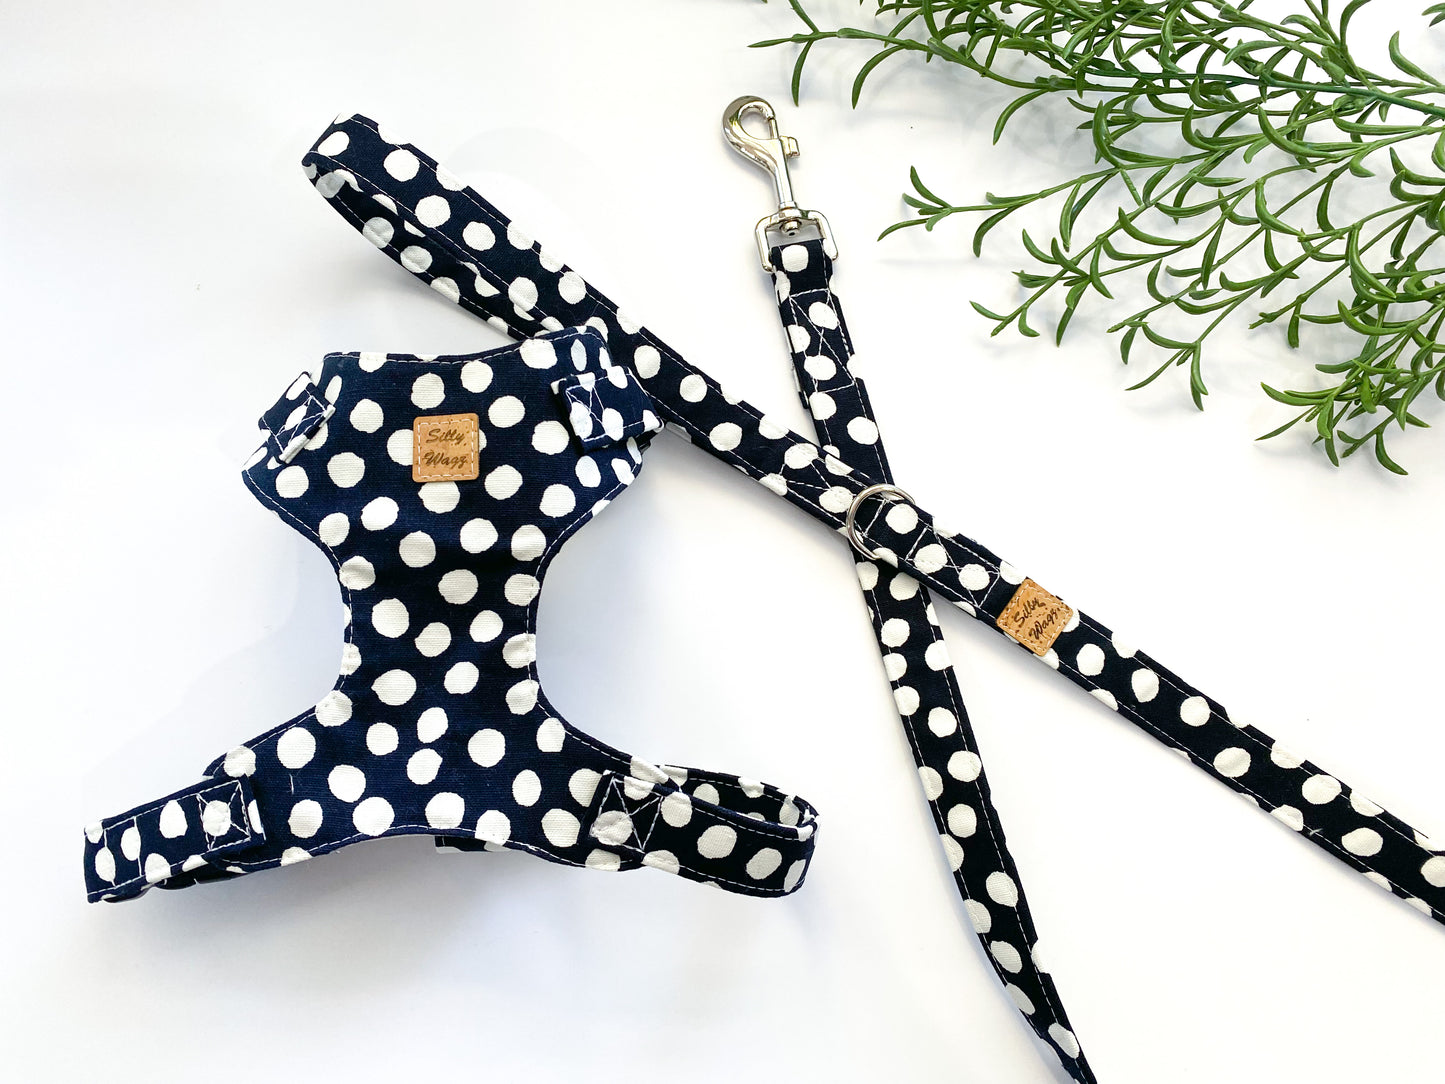 Handmade 'Navy Polka Dot’ Chest Harness